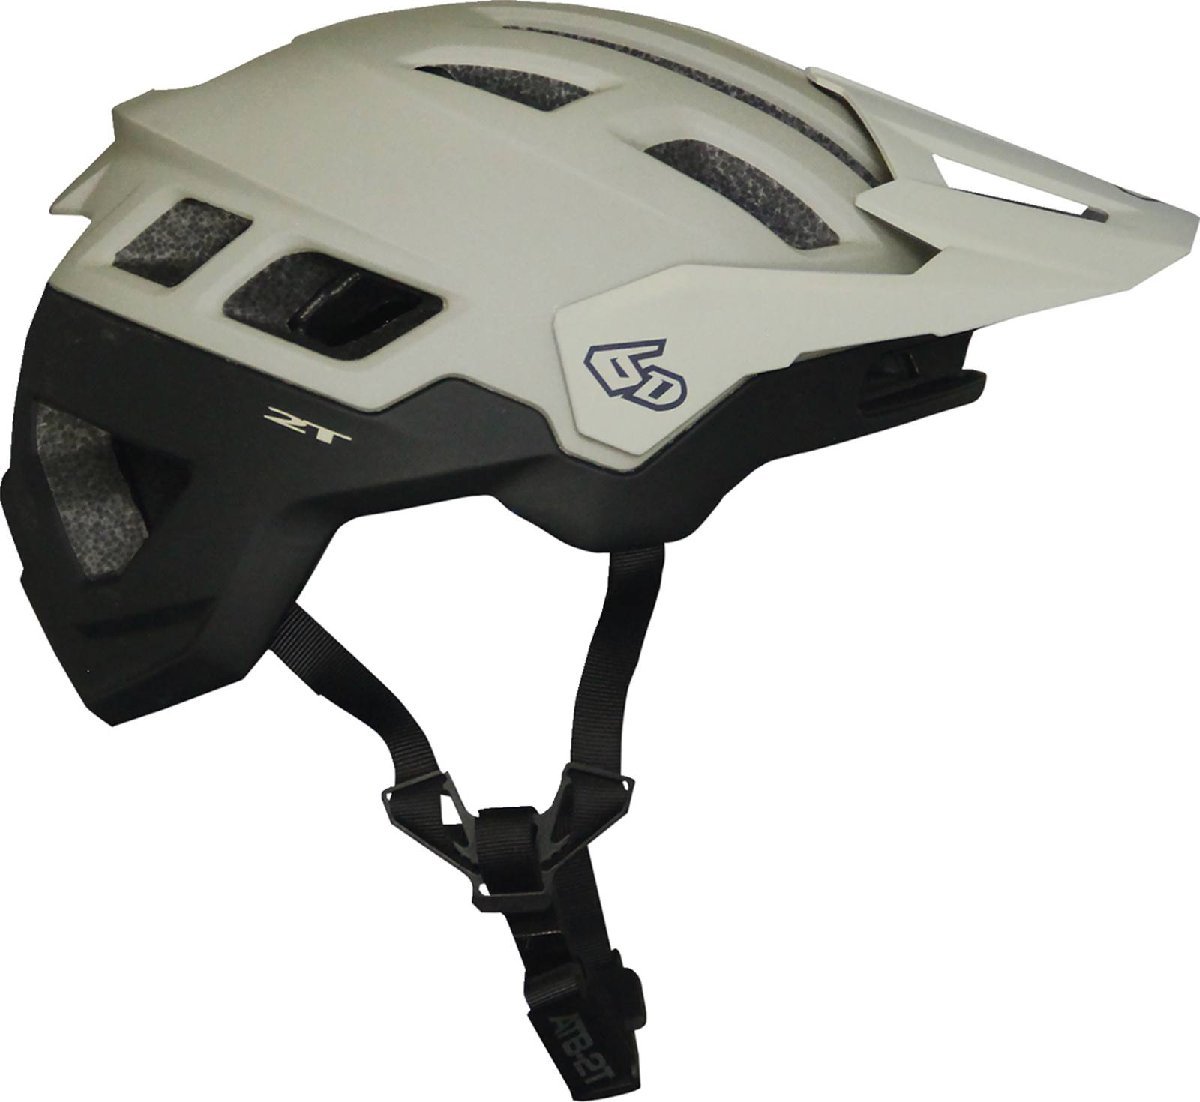 XL/2XLサイズ - サンド/ブラックマット - 6D ヘルメッツ ATB-2T Ascent 自転車用 ヘルメット